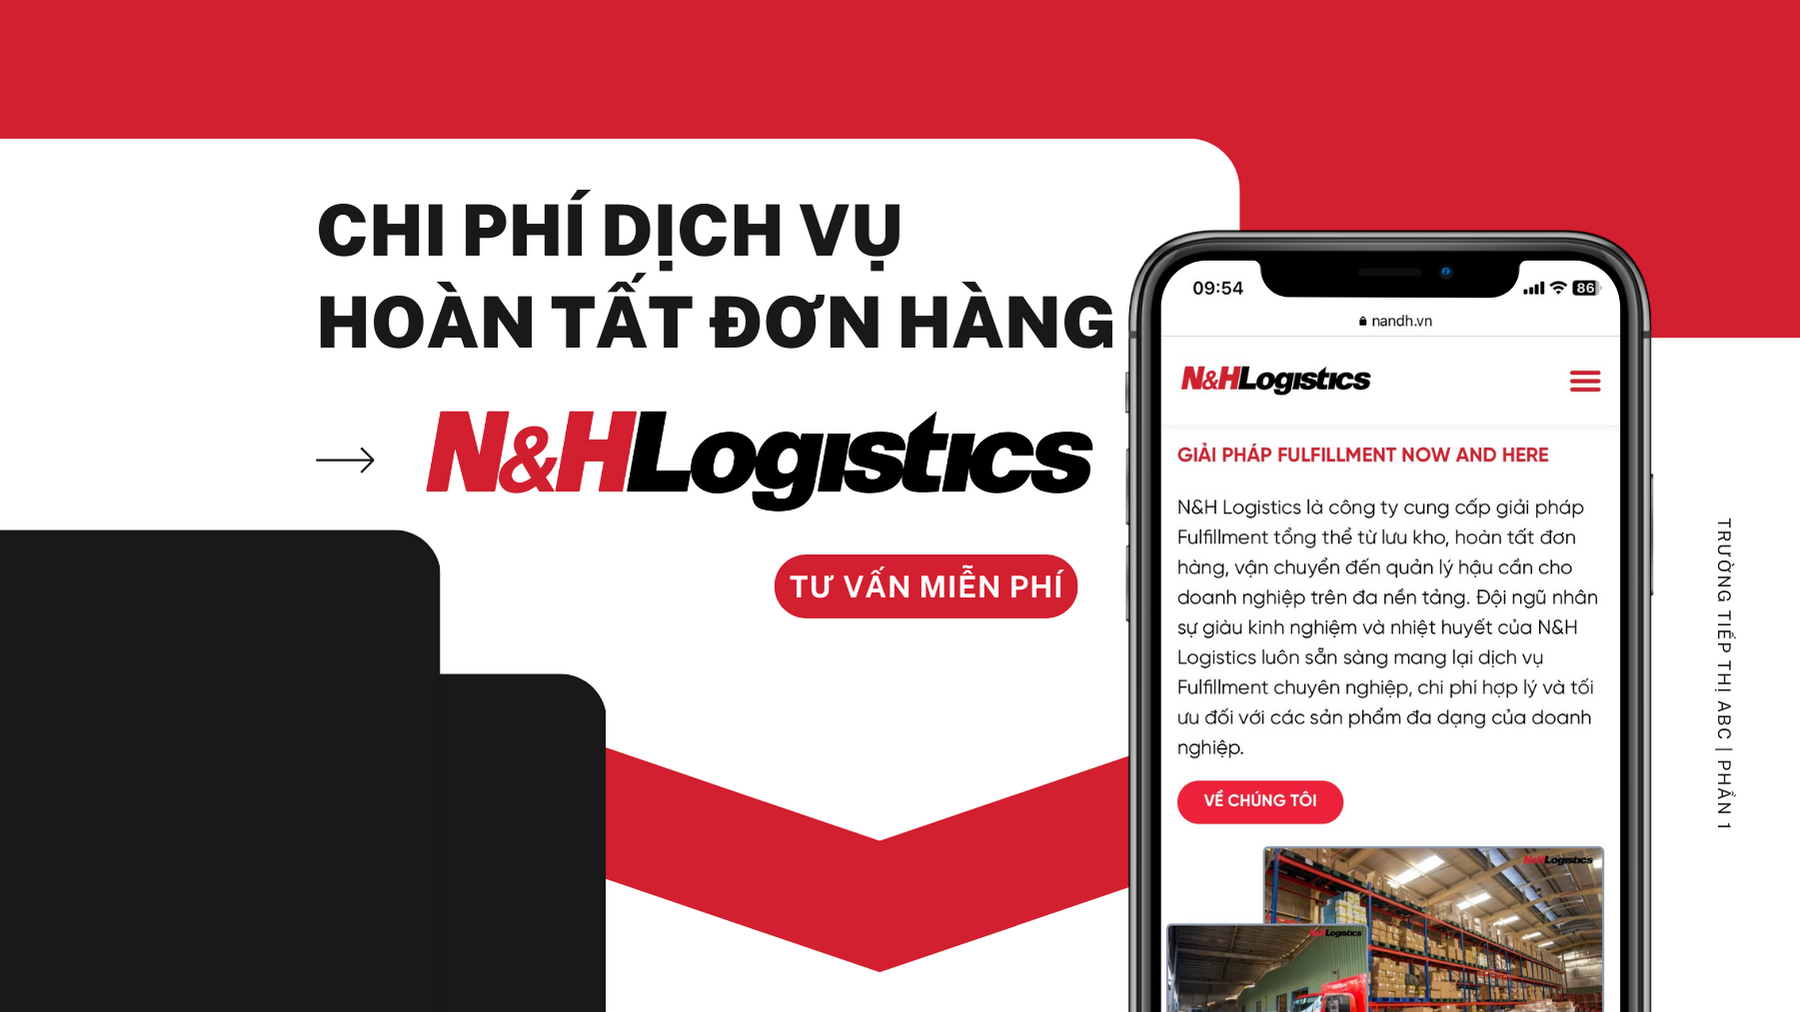 Chi phí dịch vụ hoàn tất đơn hàng của N&H Logistics là bao nhiêu?